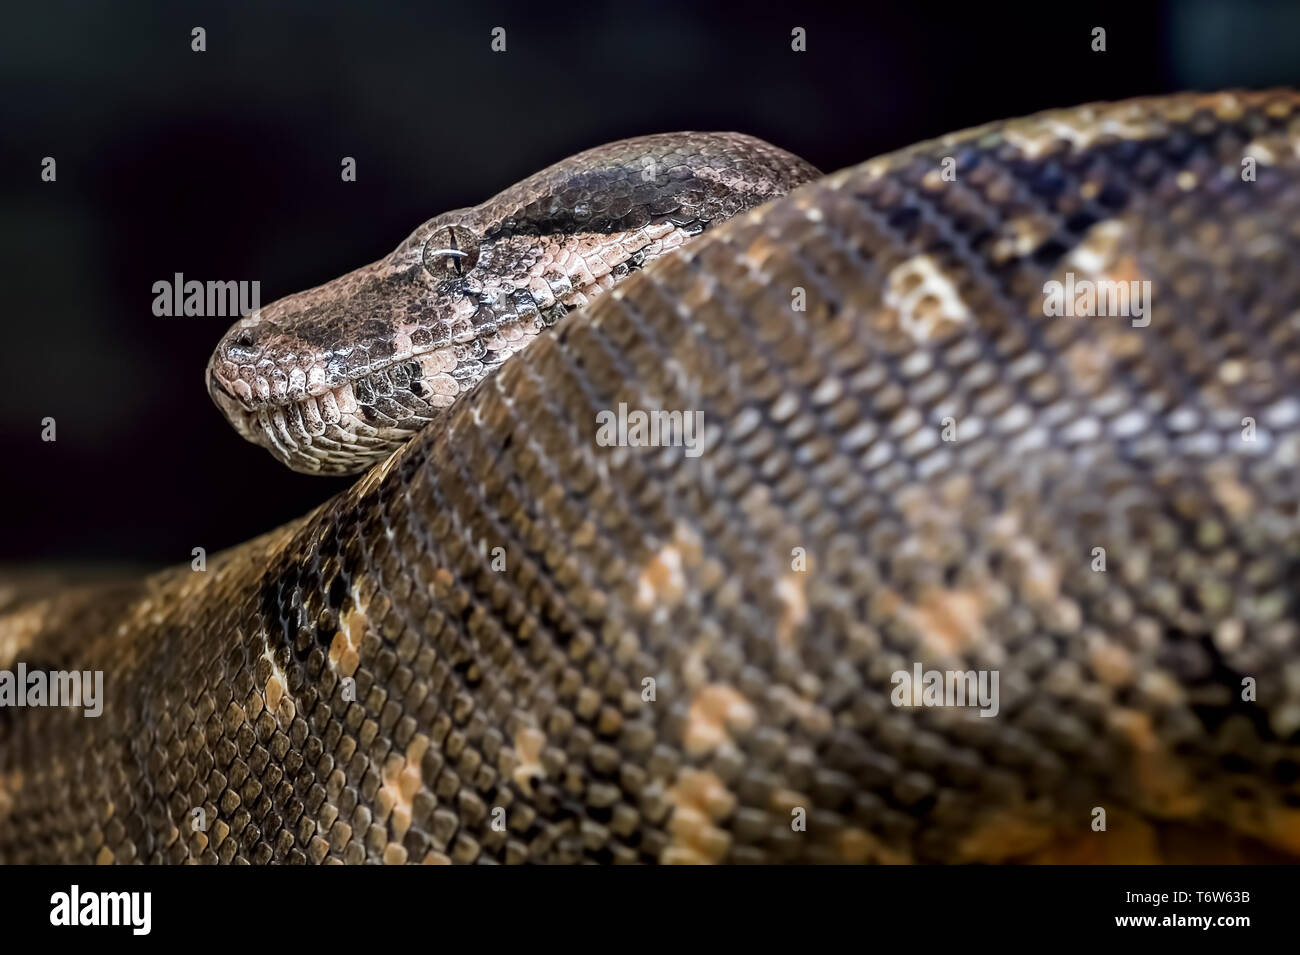 La testa e la coda di un grande serpente nero in uno zoo Foto Stock